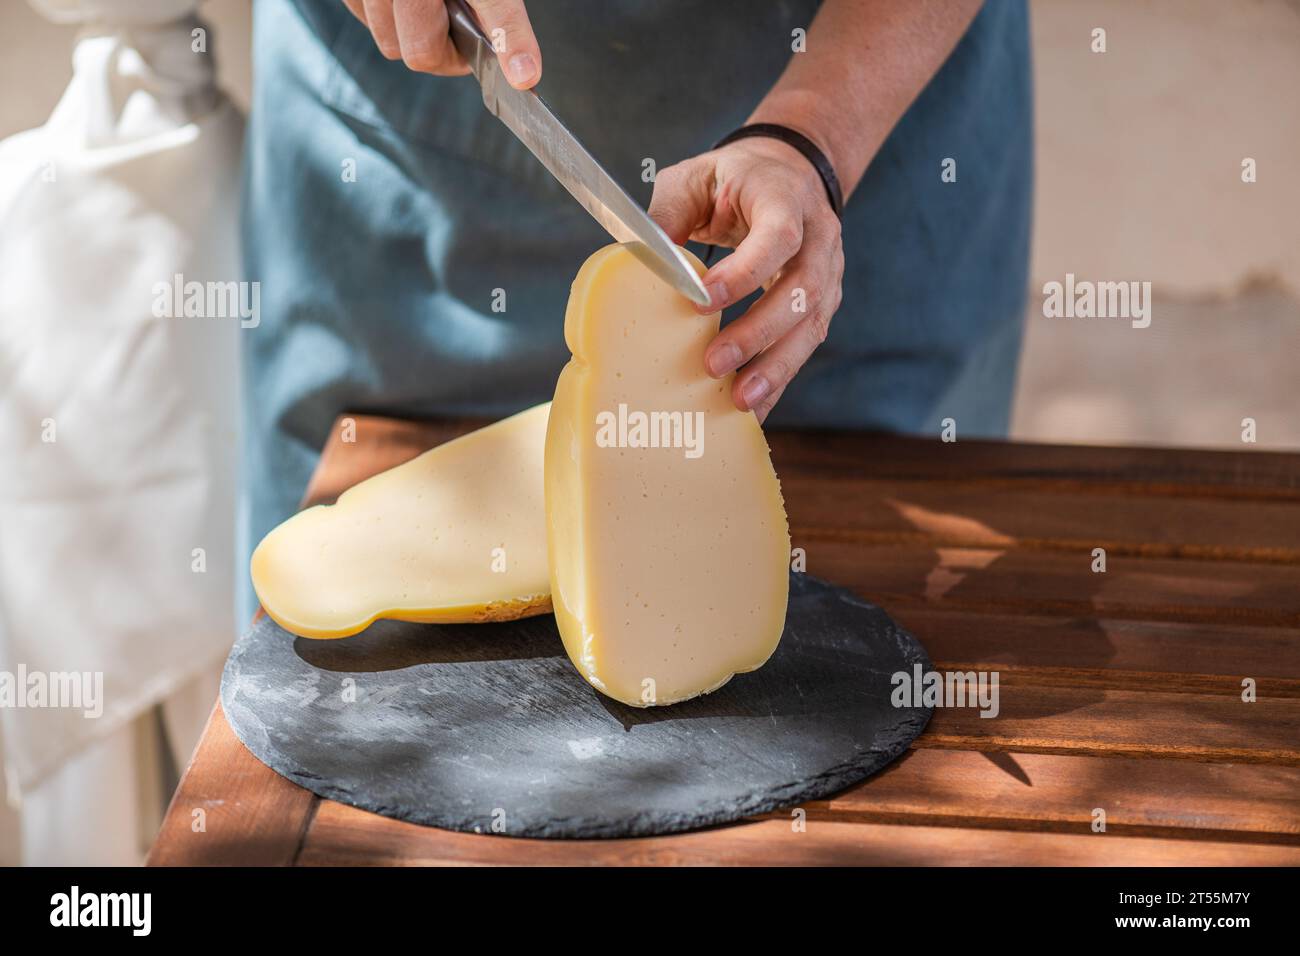 Weibliche Hand schneidet einen Caciocavallo silano Käse auf einem Schneidebrett Stockfoto